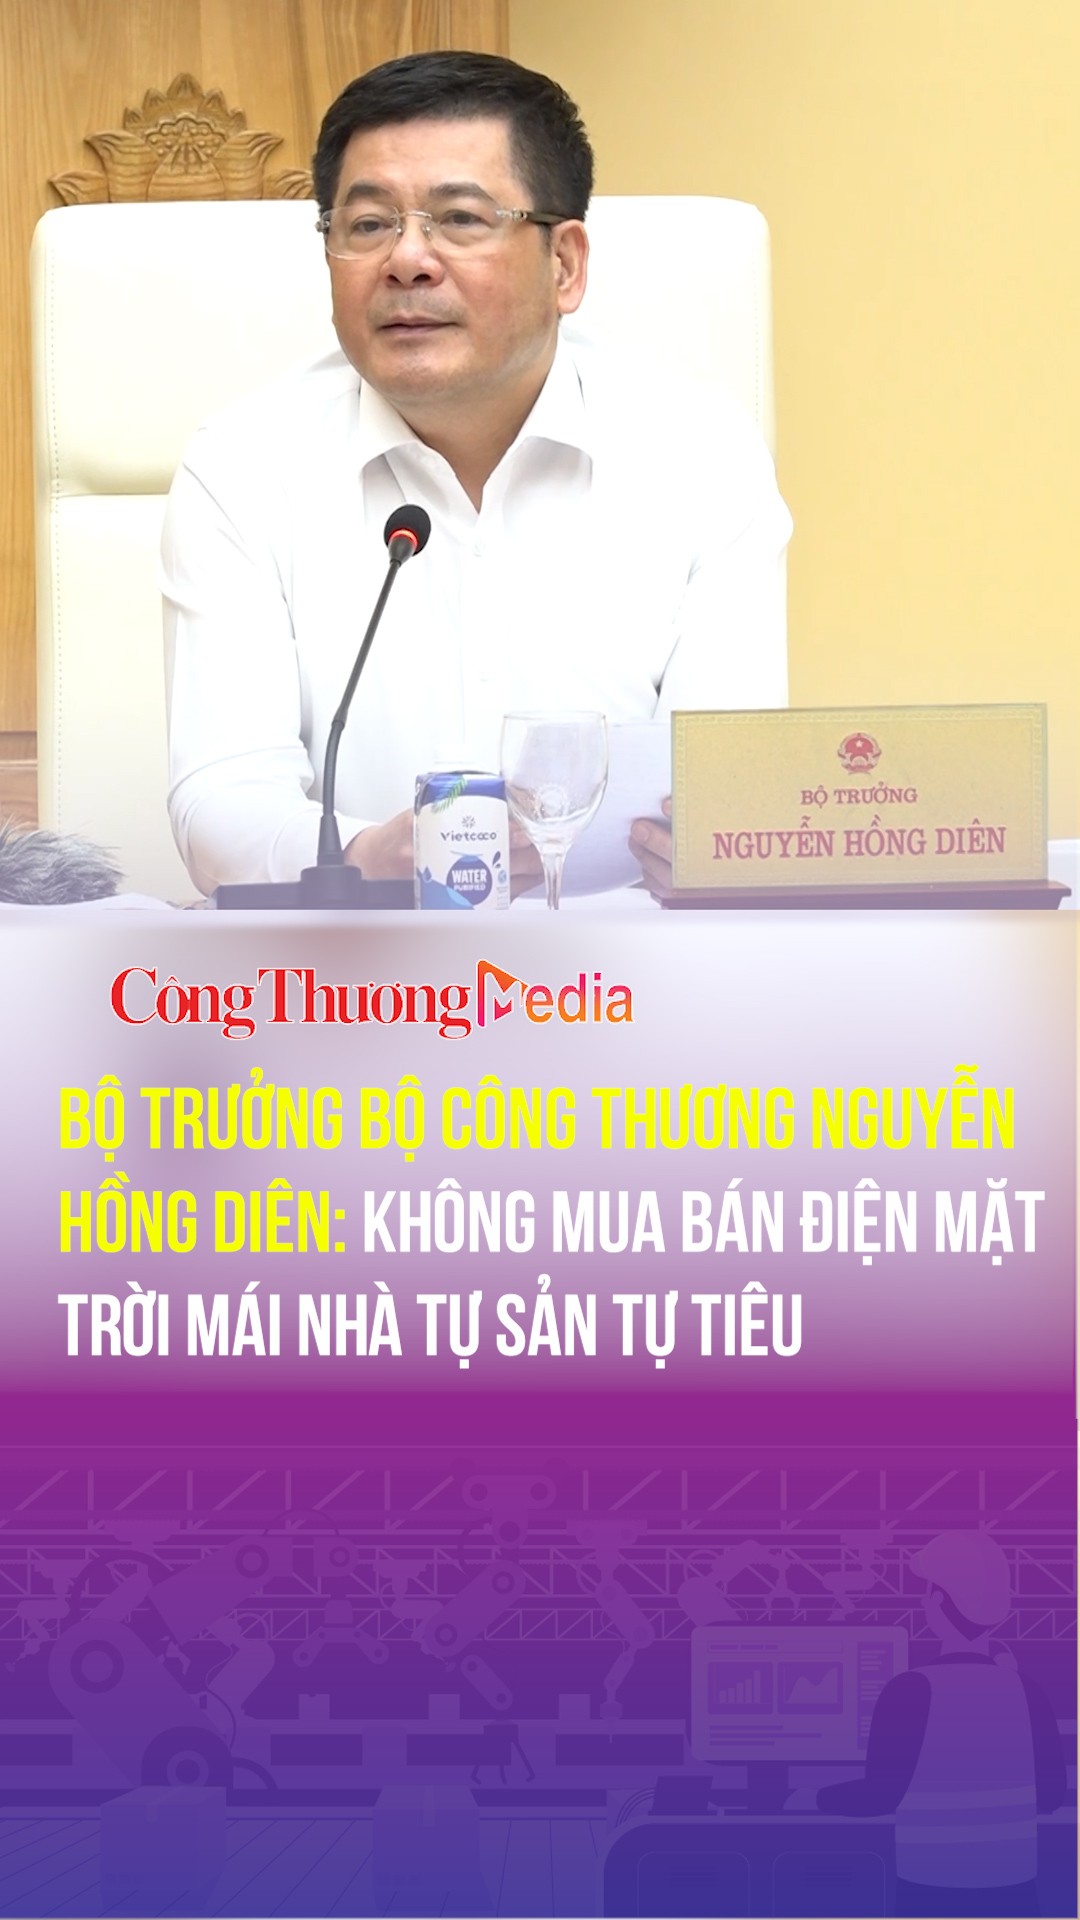 Bộ trưởng Bộ Công Thương Nguyễn Hồng Diên: Không mua bán điện mặt trời mái nhà tự sản tự tiêu